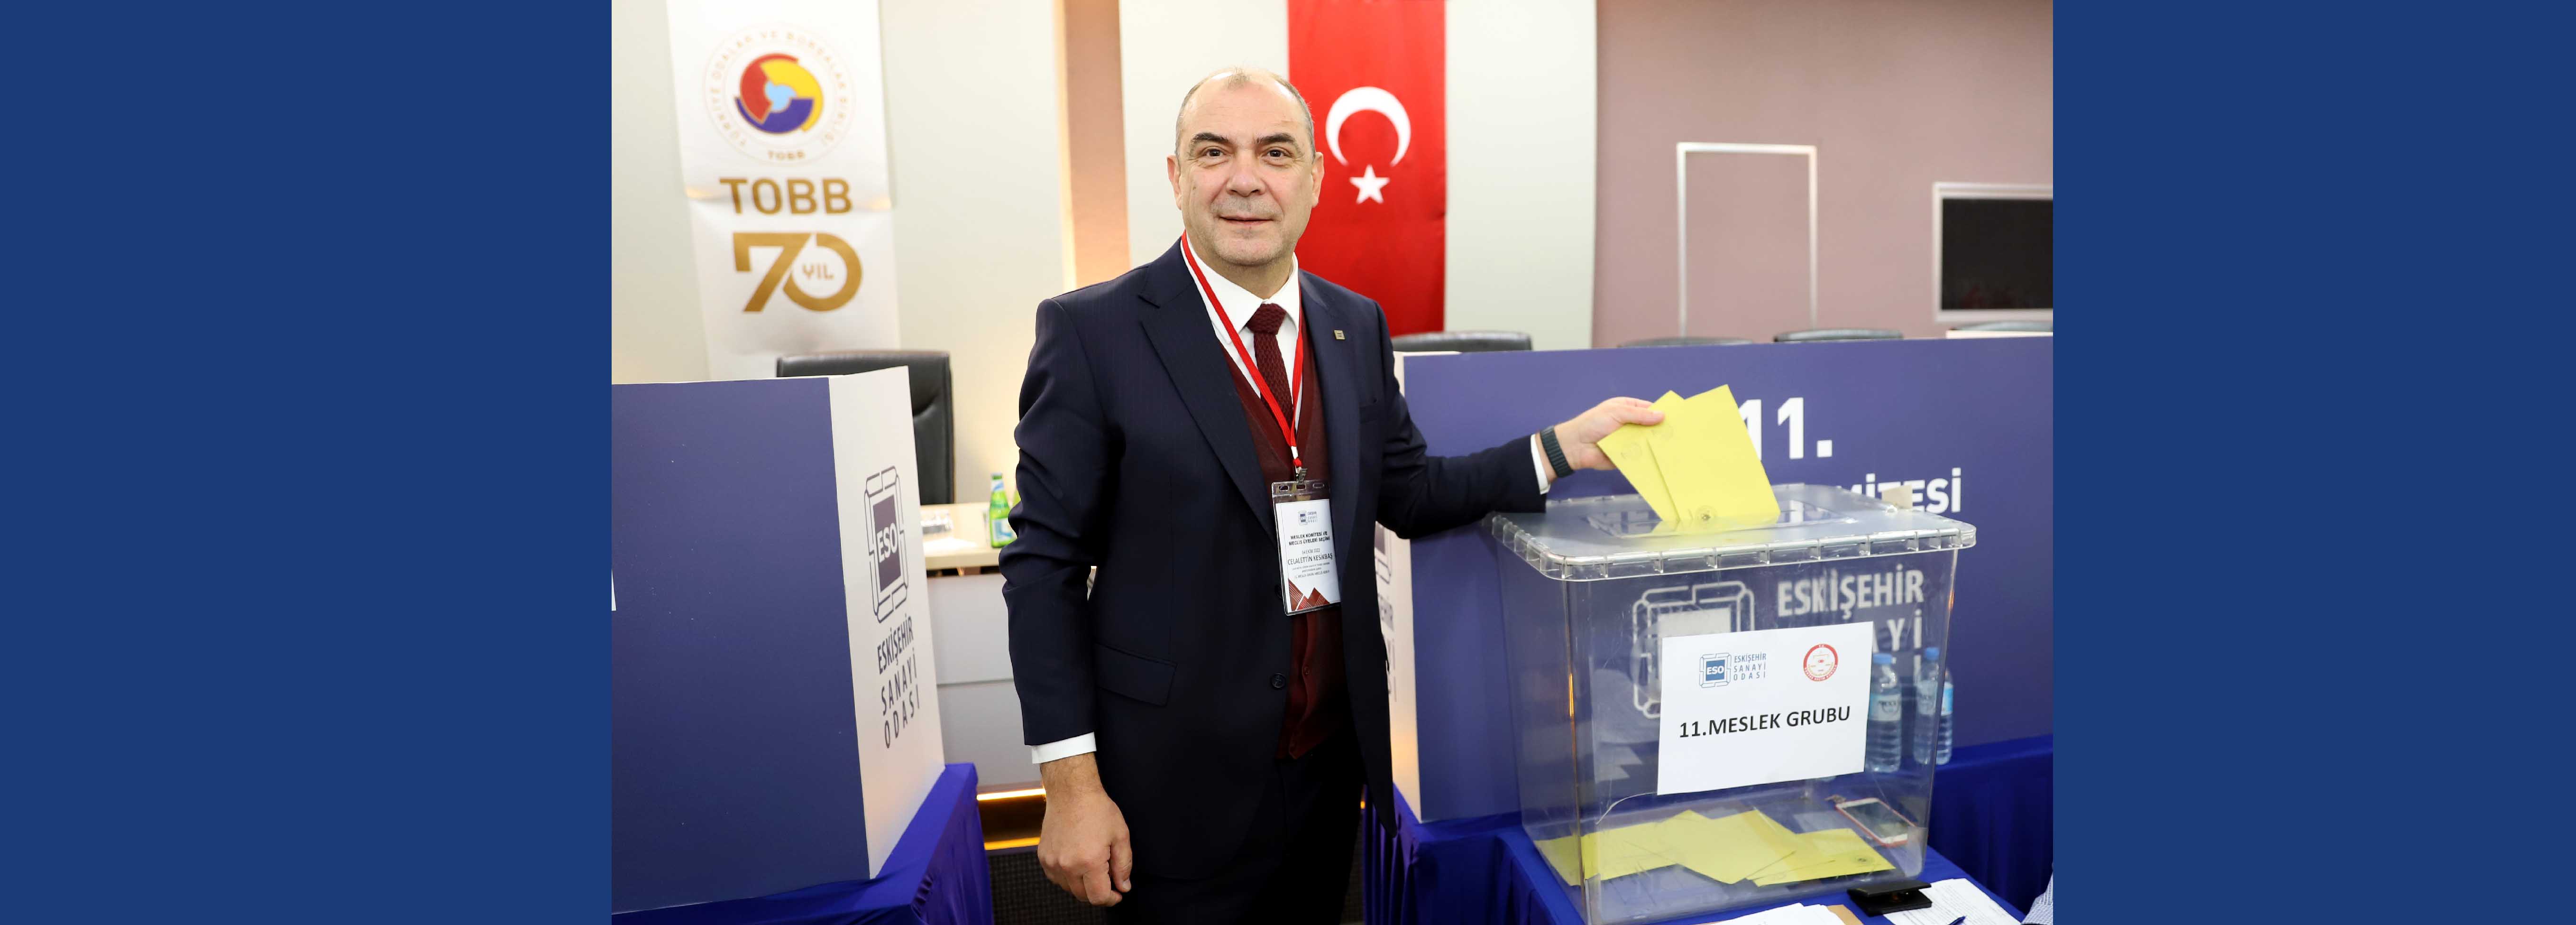 ESO Seçimleri başladı; Eskişehir ve Türkiye için çalışmaya devam edeceğiz